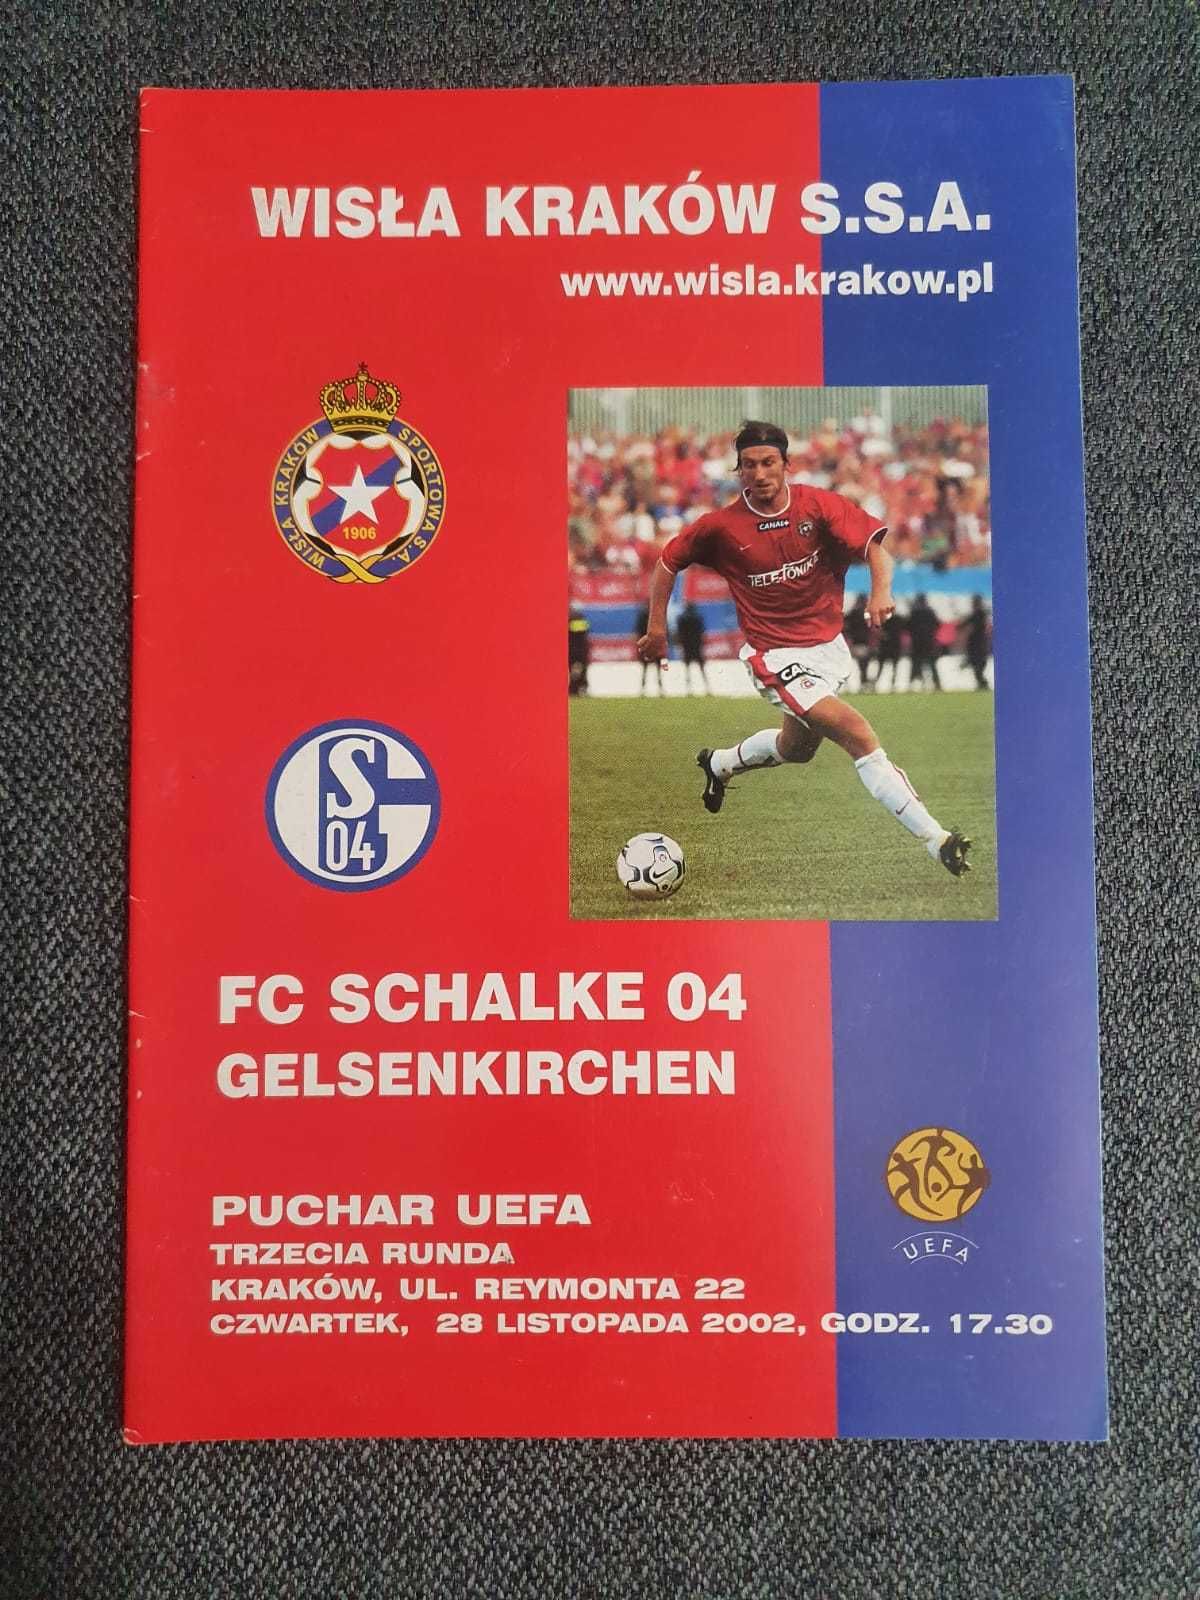 Program meczowy Wisła Kraków vs. FC Schalke 04 Puchar UEFA 2002